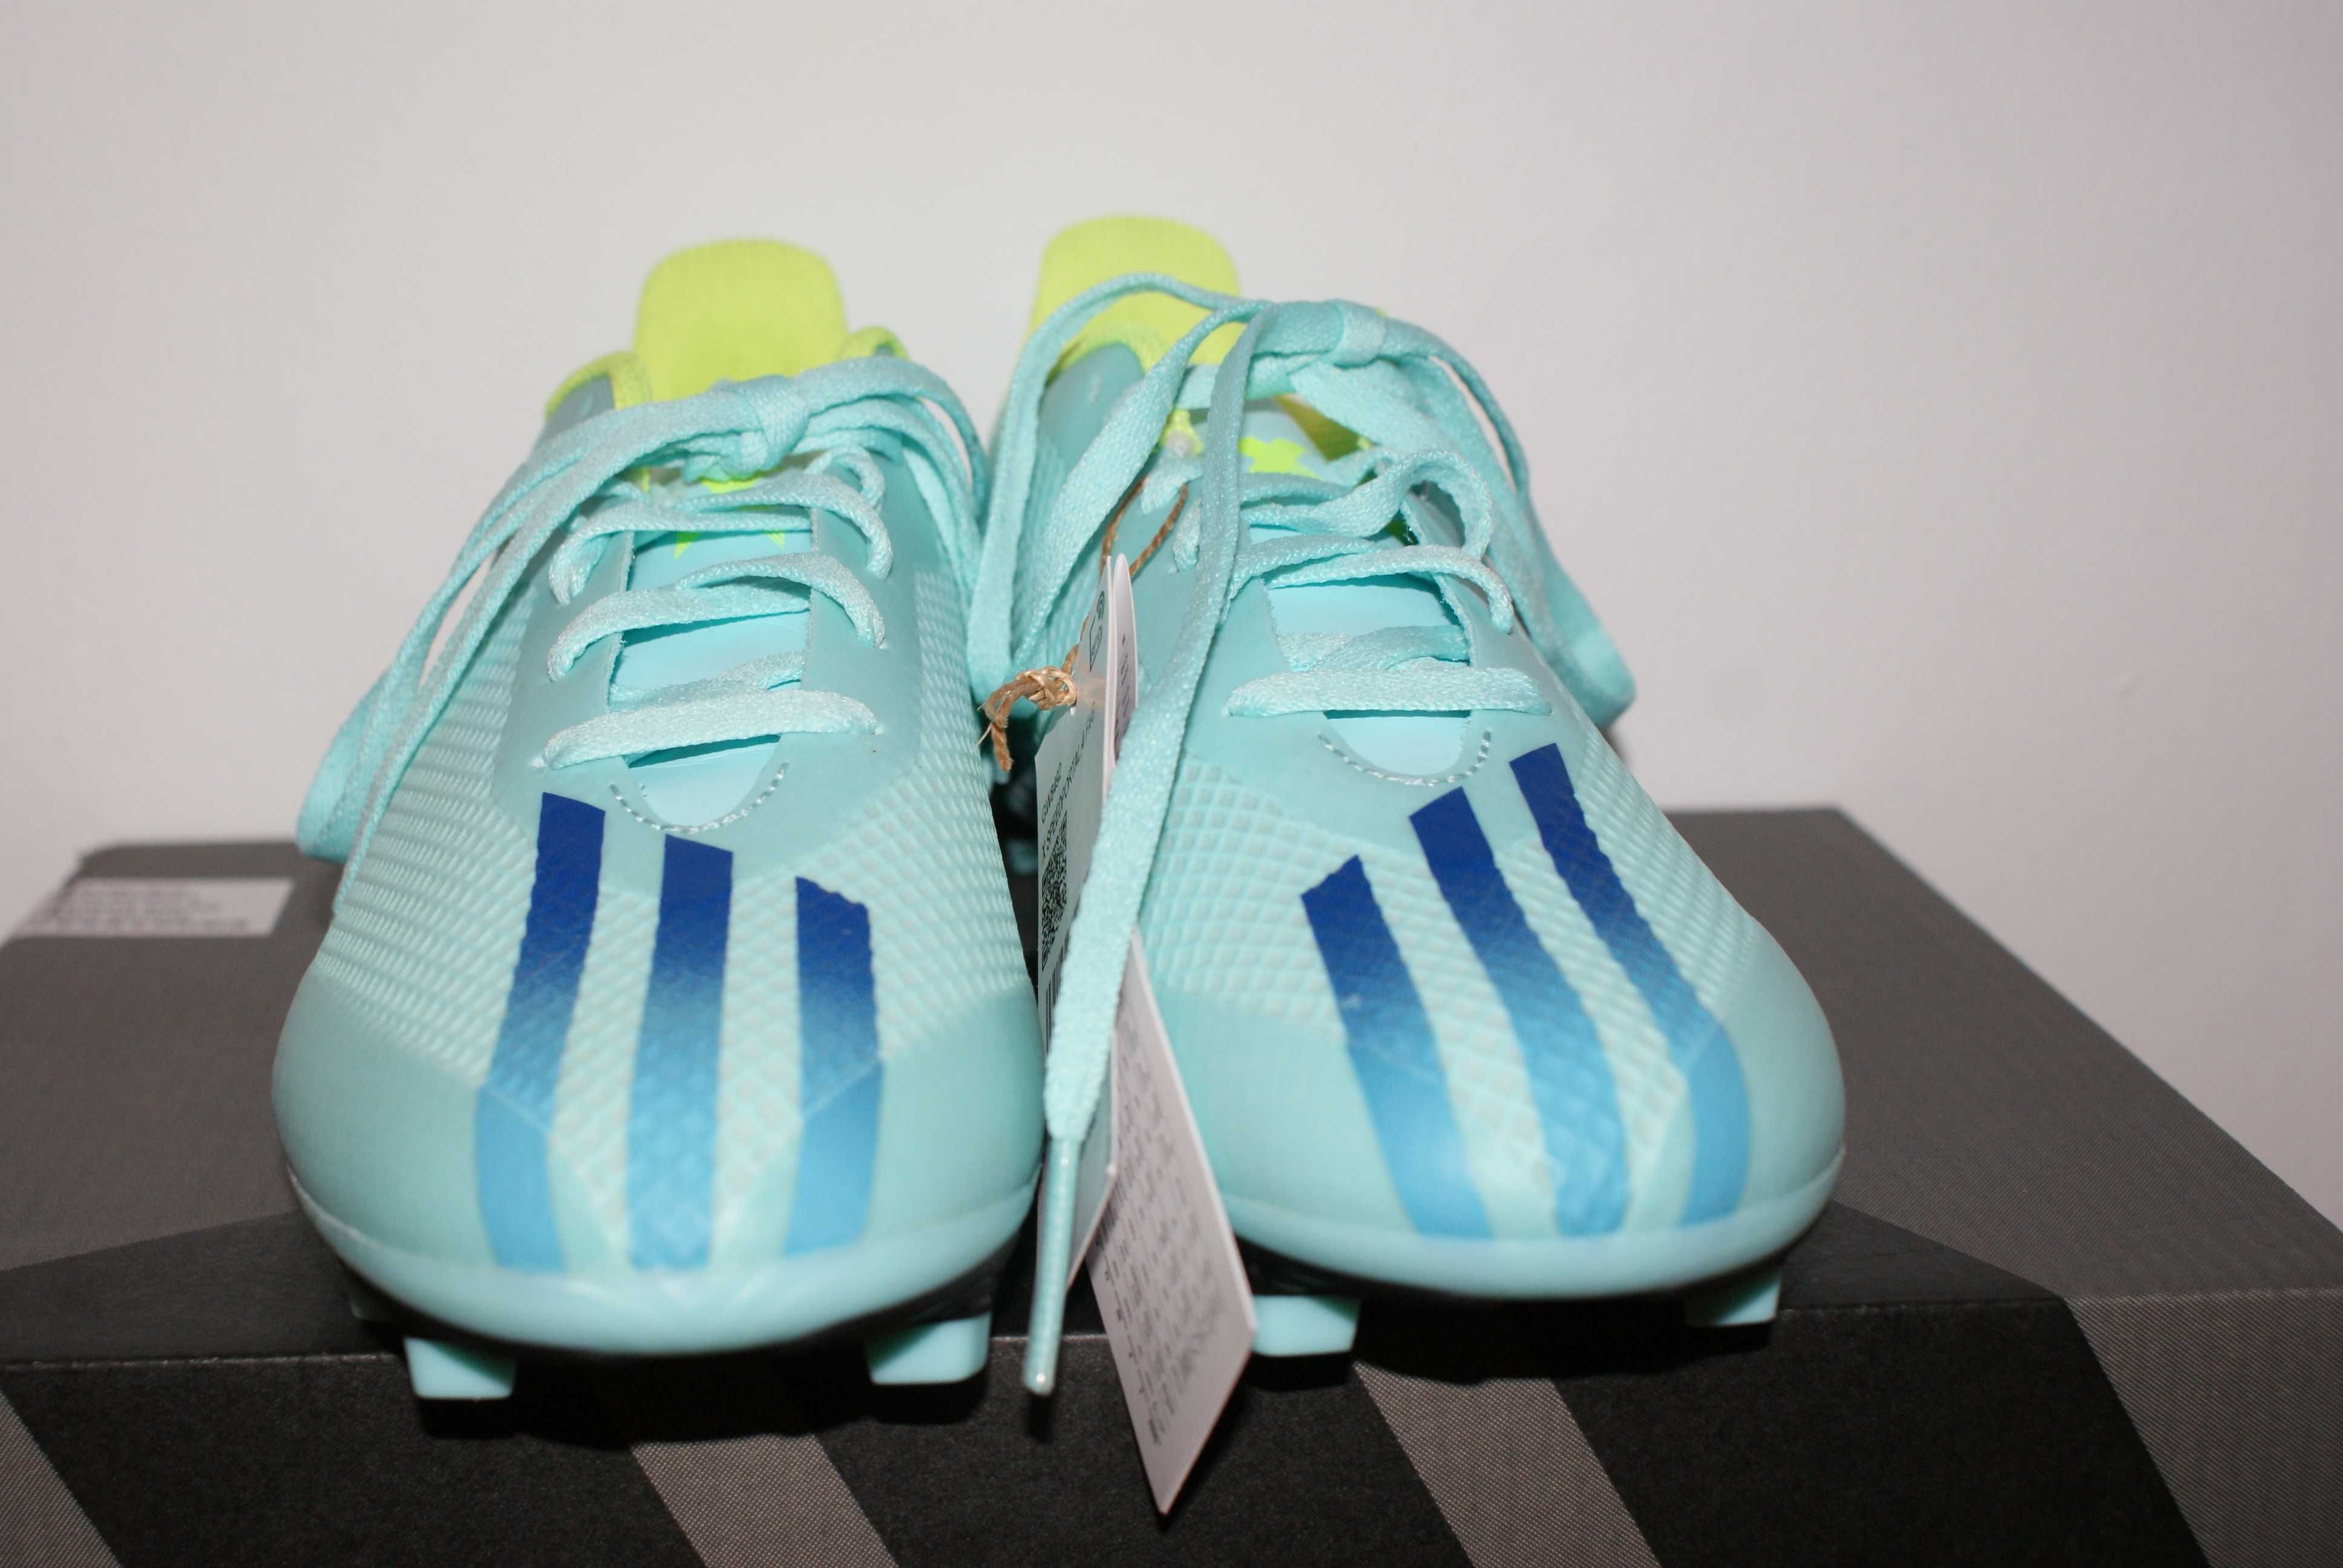 buty piłkarskie korki adidas x speedportal.4 FXG gw8492